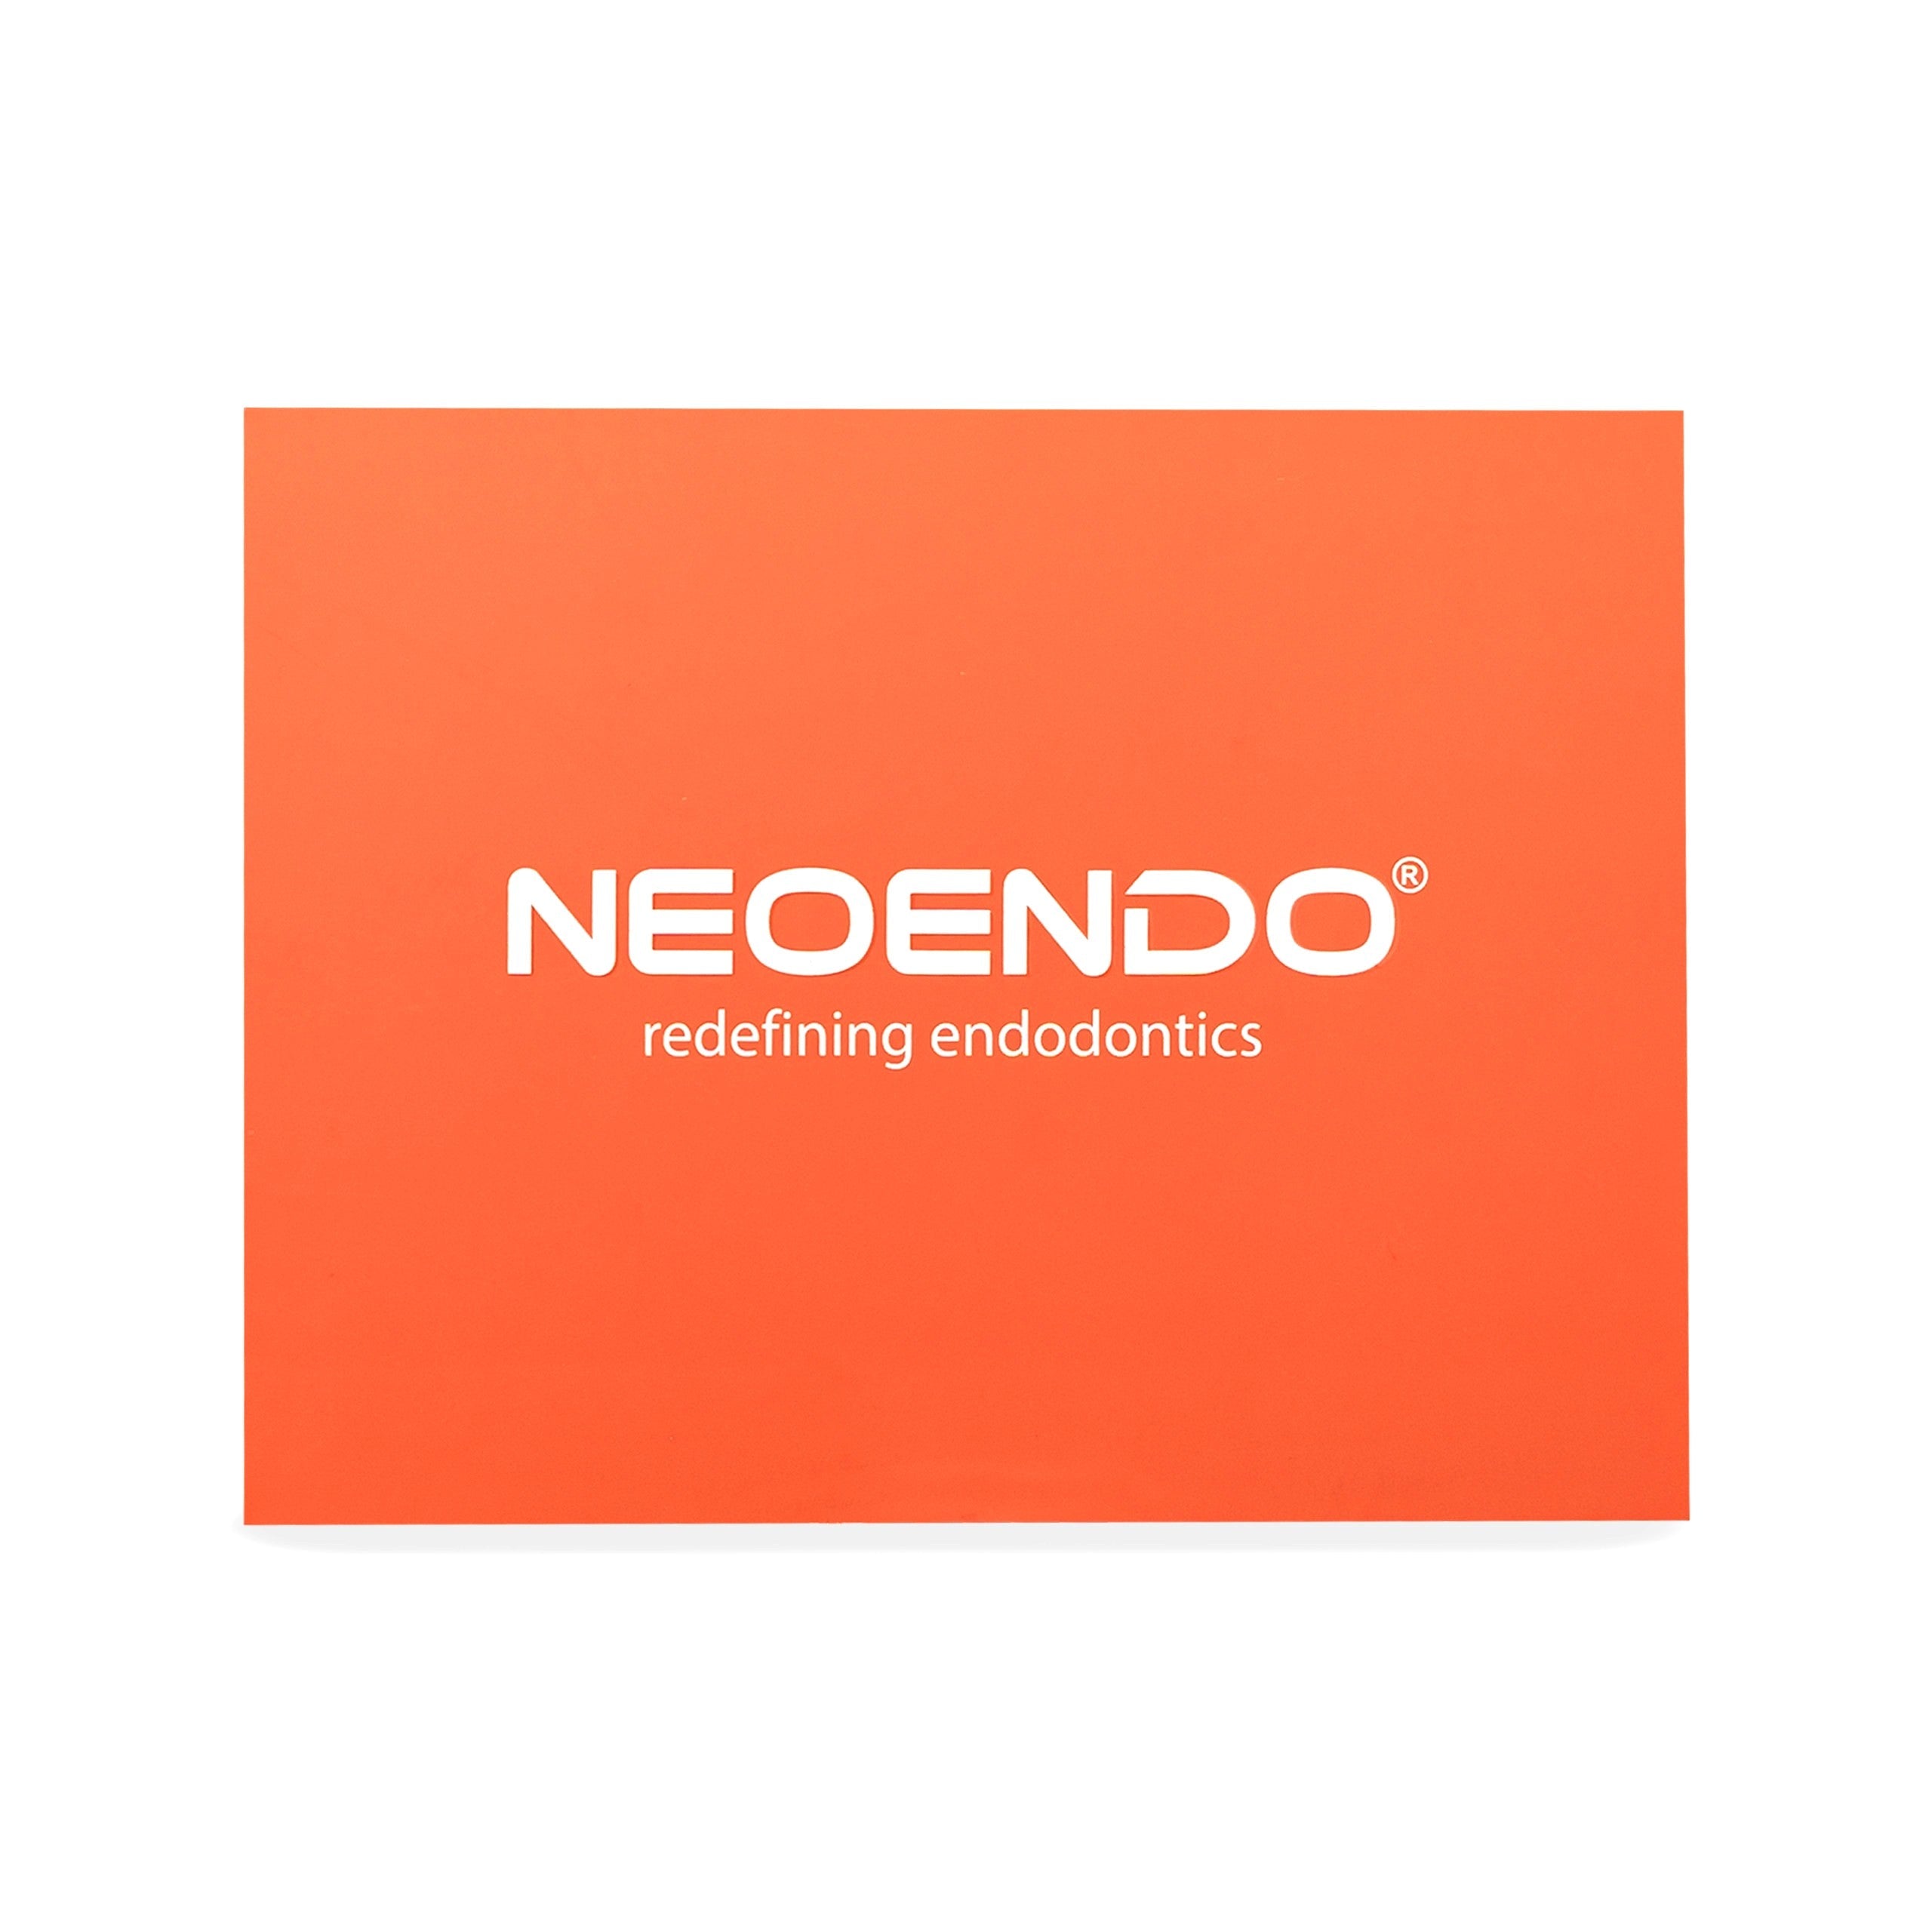 NeoEndo Flex Files 21mm 20/6 Endo Rotary Files